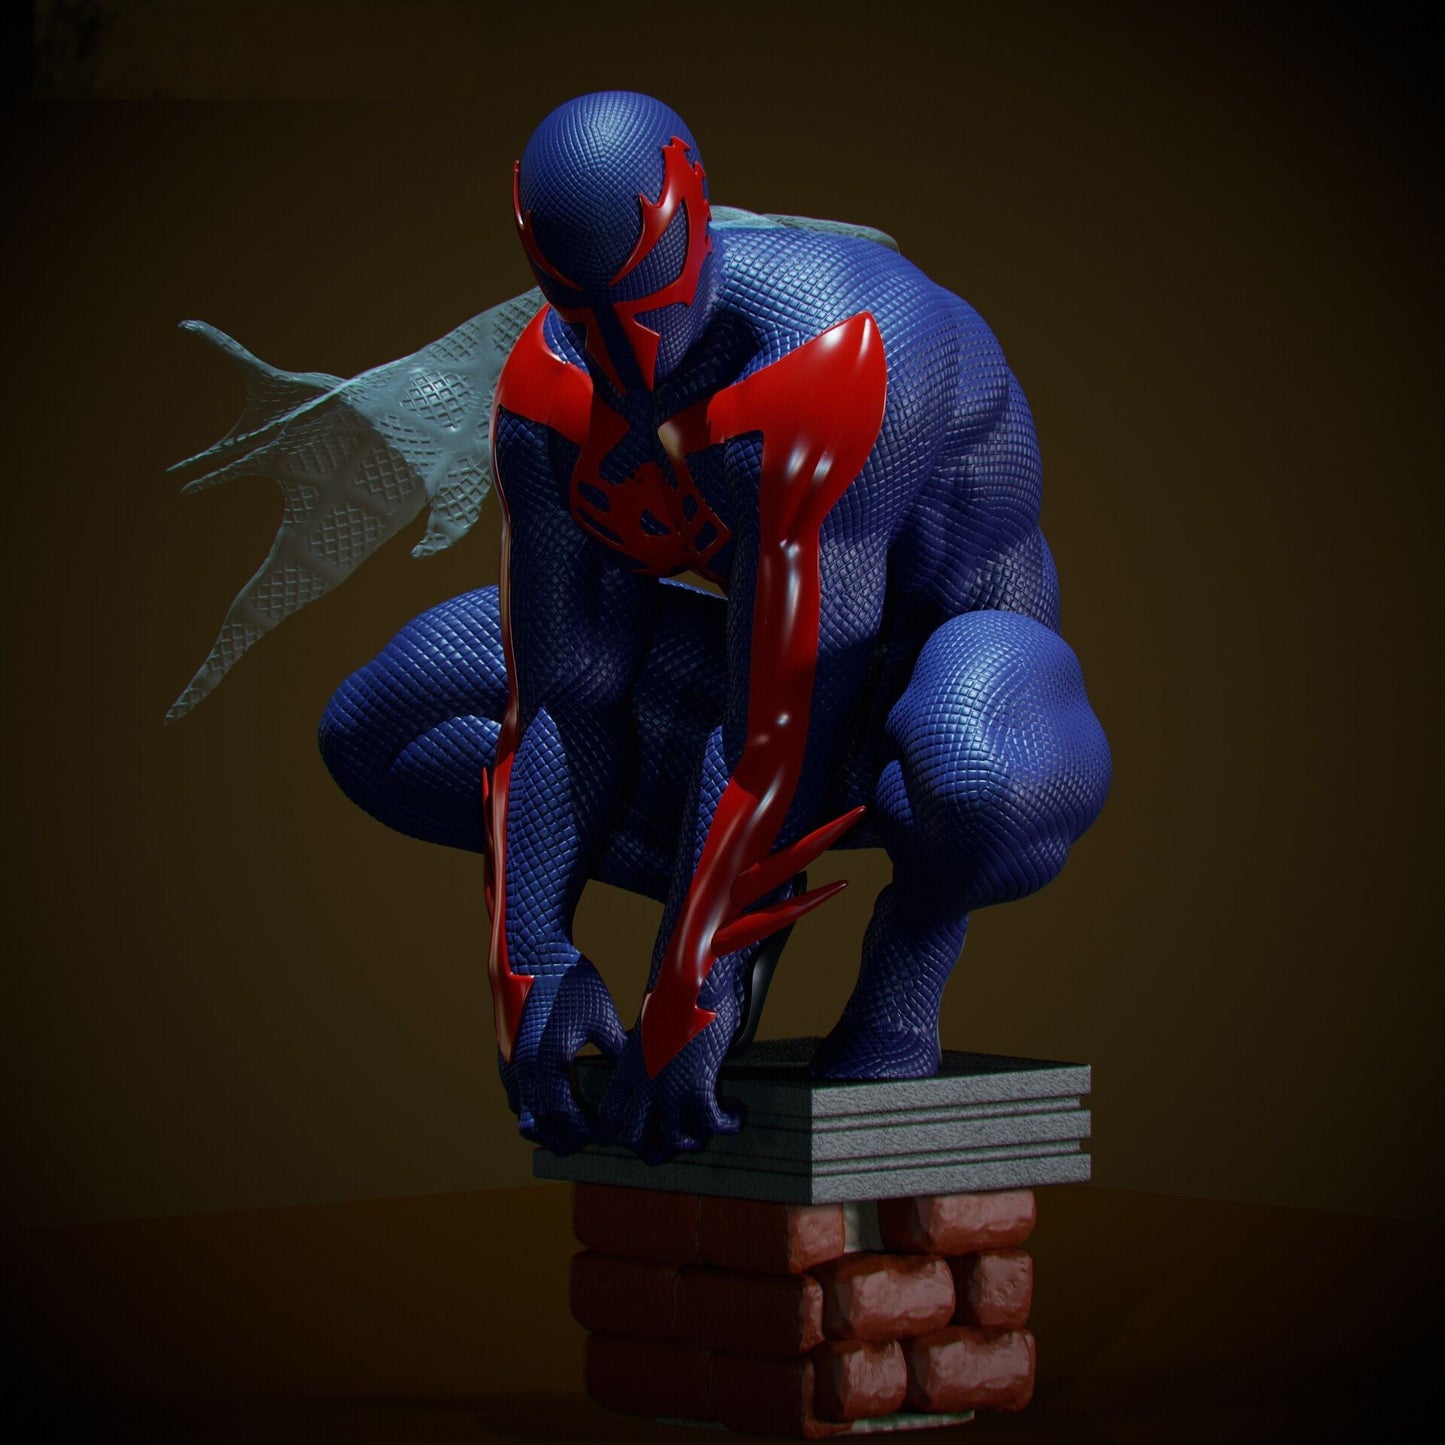 Spider-man 2099 - Marvel comics - STL 3D Print Files